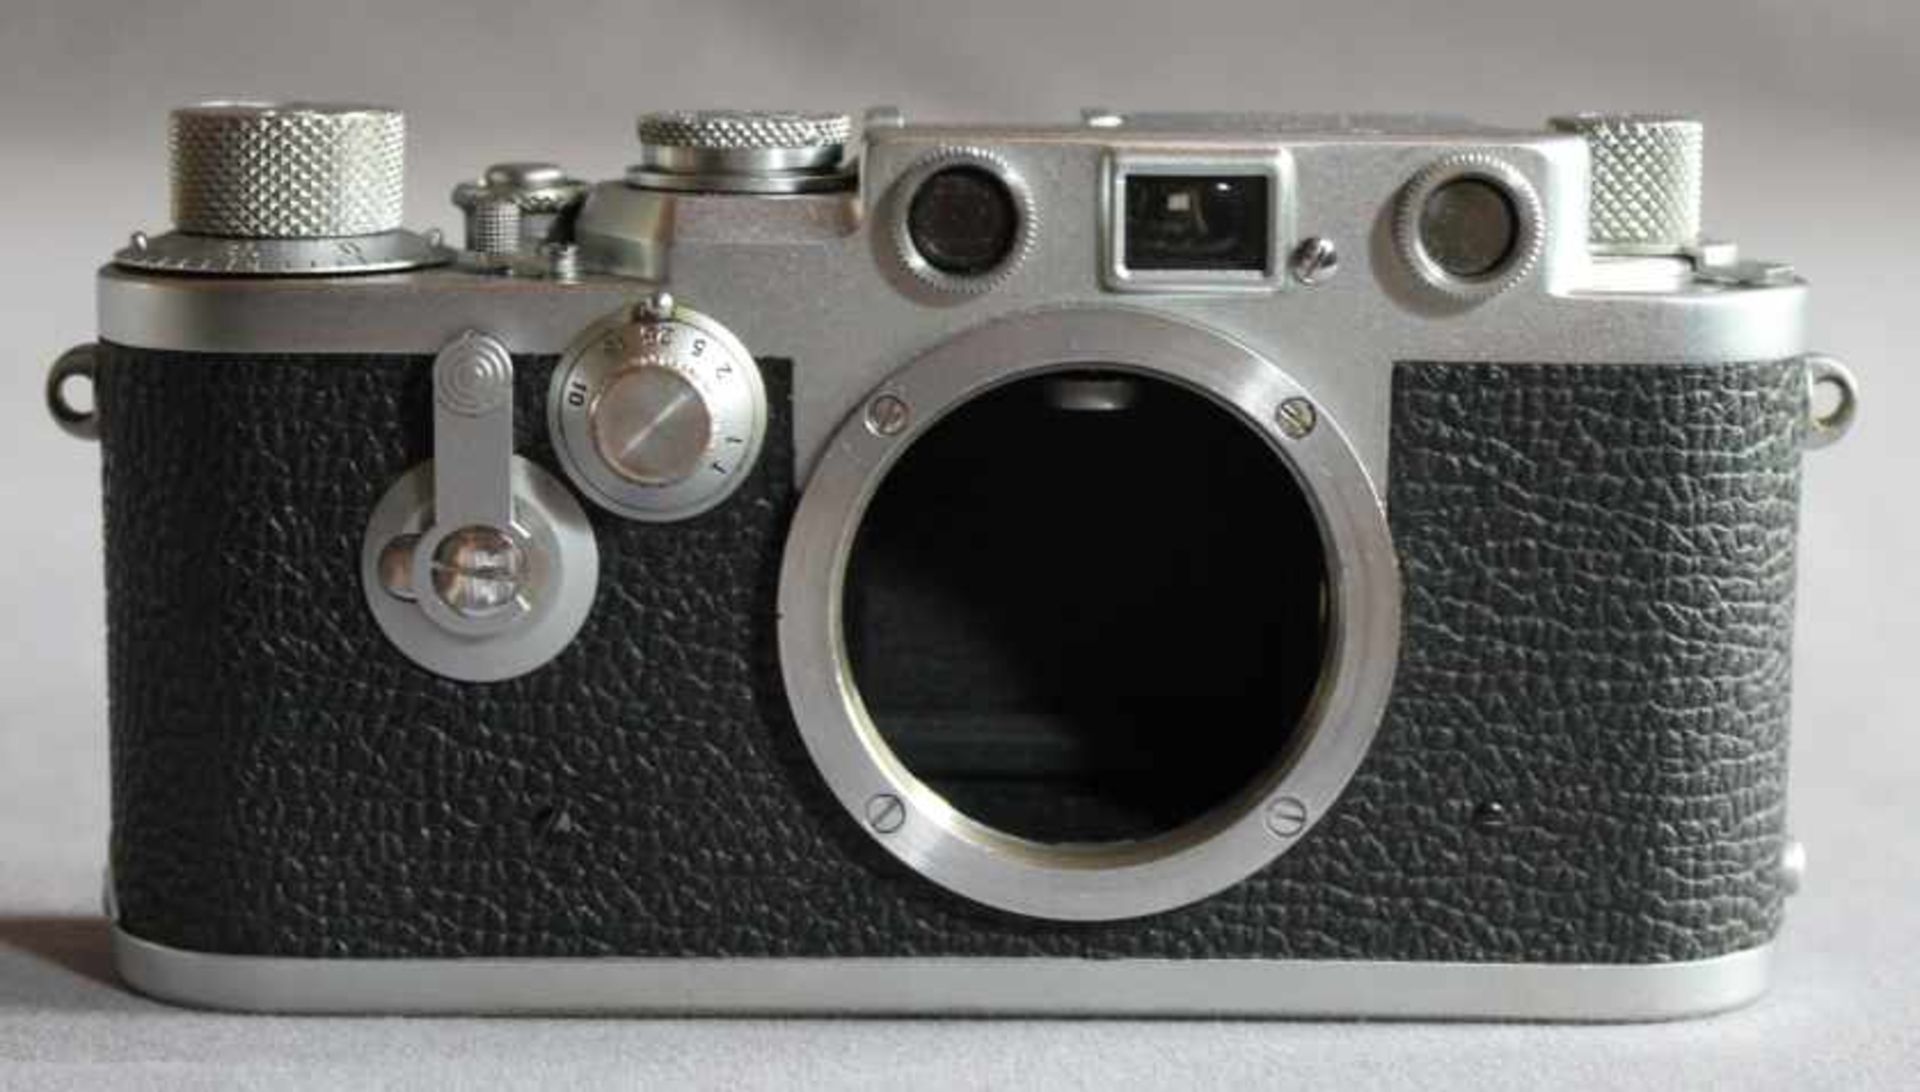 1 Kamera-Body ohne Bereitschaftstasche "Leica, DBP Ernst Leitz GmbH", Modell IIIf (Baujahr 1950-